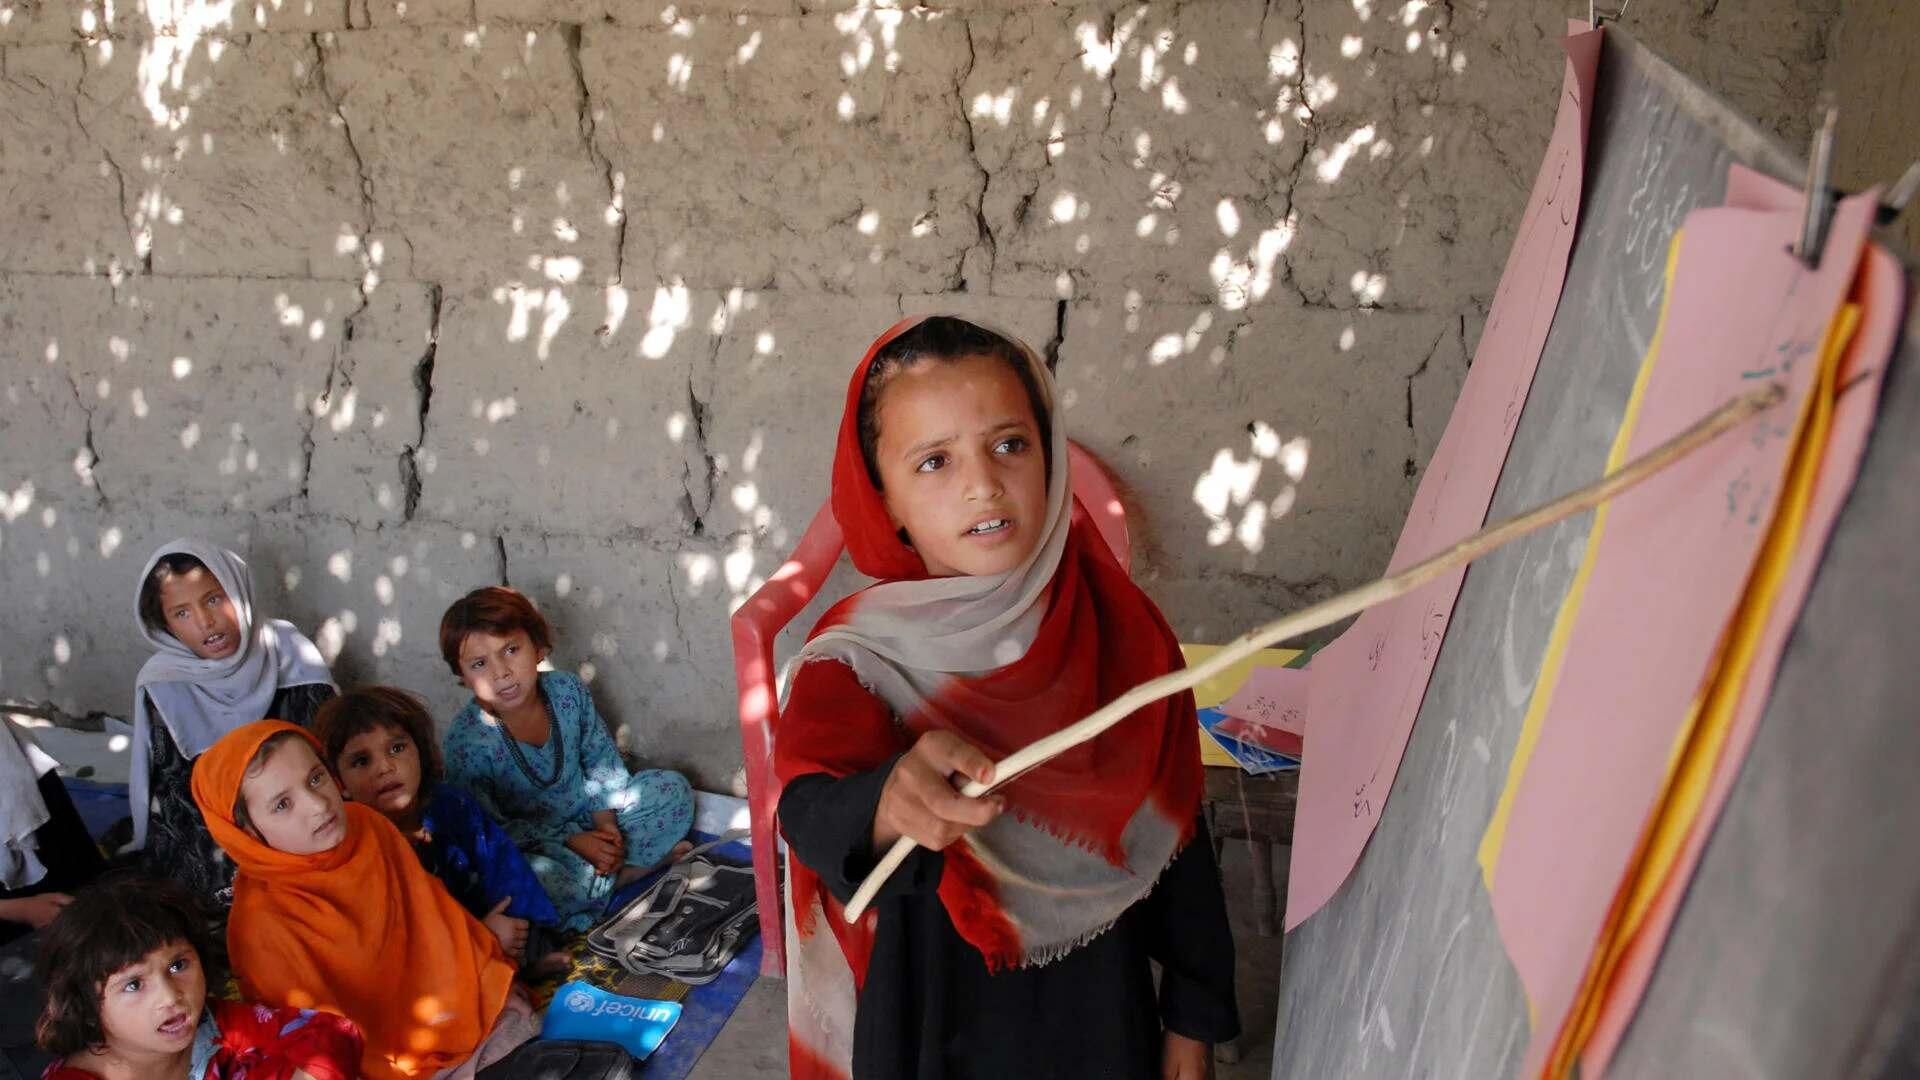 Ein Mädchen zeigt mit einem Stock auf eine Tafel, im Hintergrund sind ein paar Kinder, die ihr zuschauen.